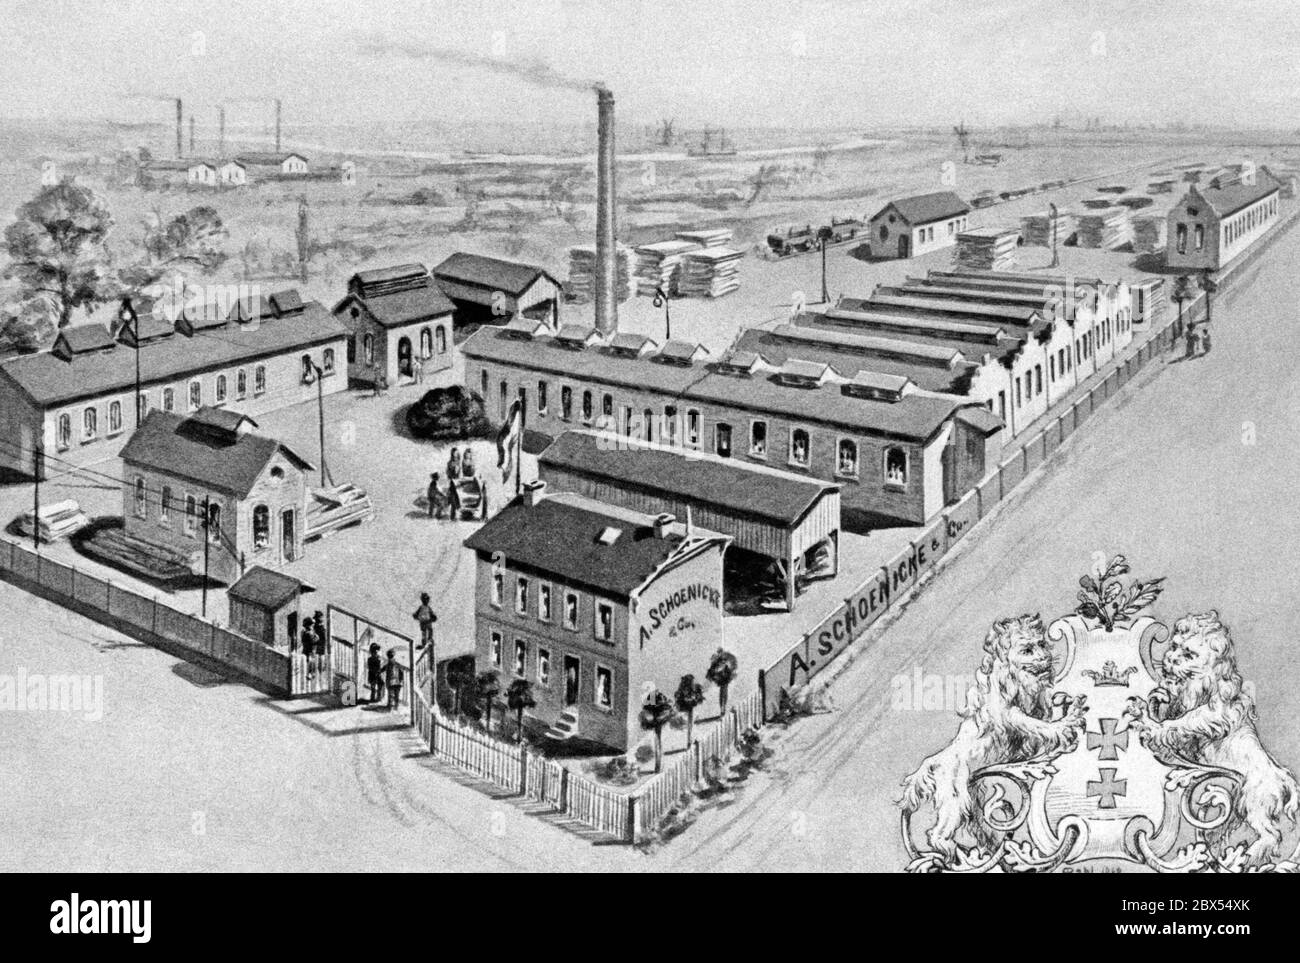 Eine Zeichnung der Fabrik der Firma Danziger Parkett- und Holzindustrie A. Schoenicke und Co. Aus dem Jahr 1800. Auf dem Werksgelände wird das Holz zur Weiterverarbeitung aufgestapelt. Stockfoto